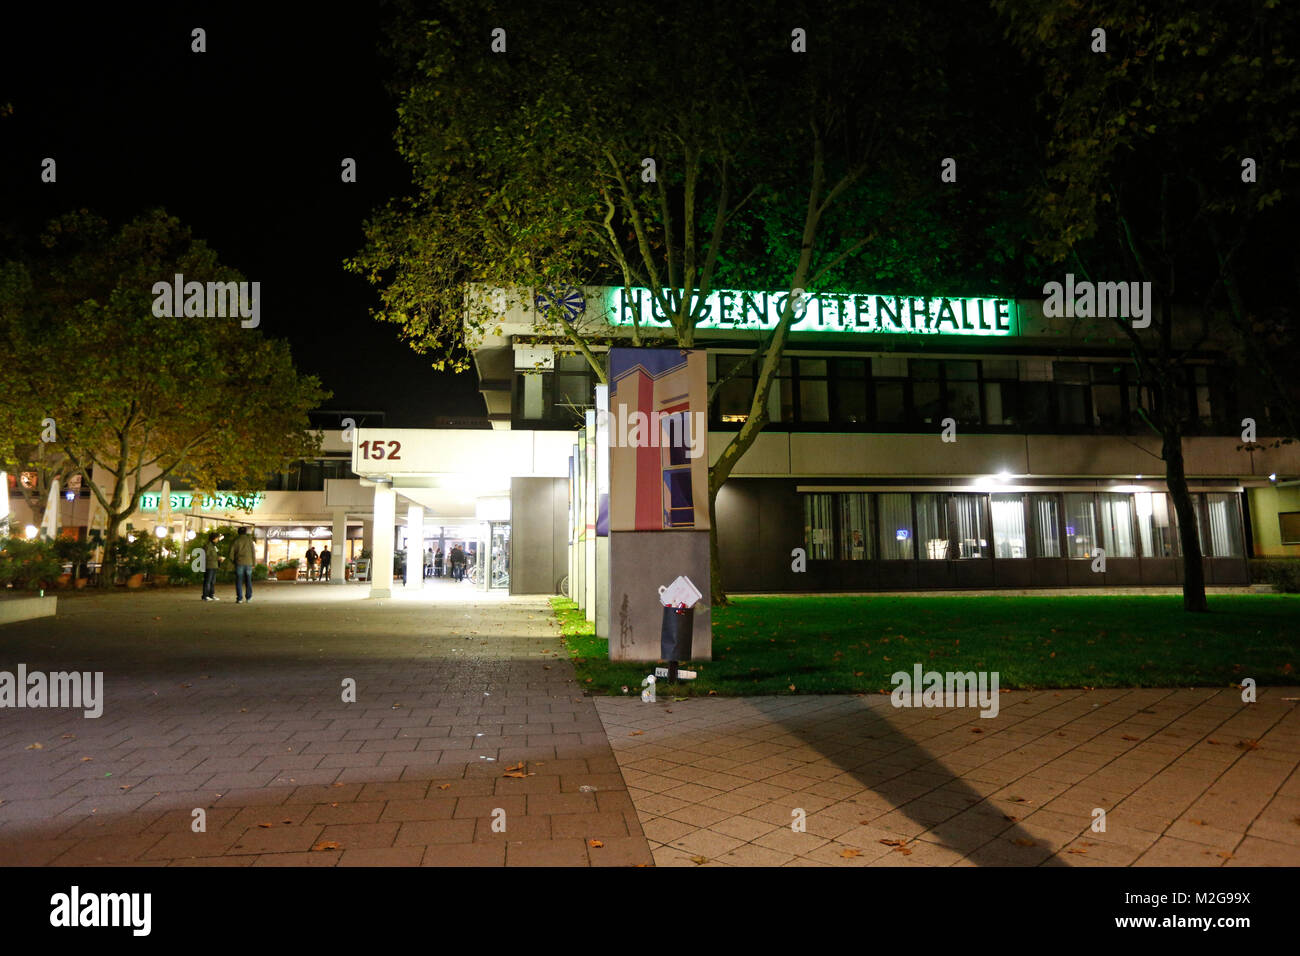 Beleuchtet wird die Hugenottenhalle in Neu-Isenburg am Sonntag Abend (06.10.2013). Über das Bushido-Konzert berichtende Journalisten wurden ohne Nennung von Gründen ('die Presse ist unerwünscht') vor die Tür gesetzt. +++ 3S PHOTO / Foto: Sven-Sebastian Sajak Stock Photo